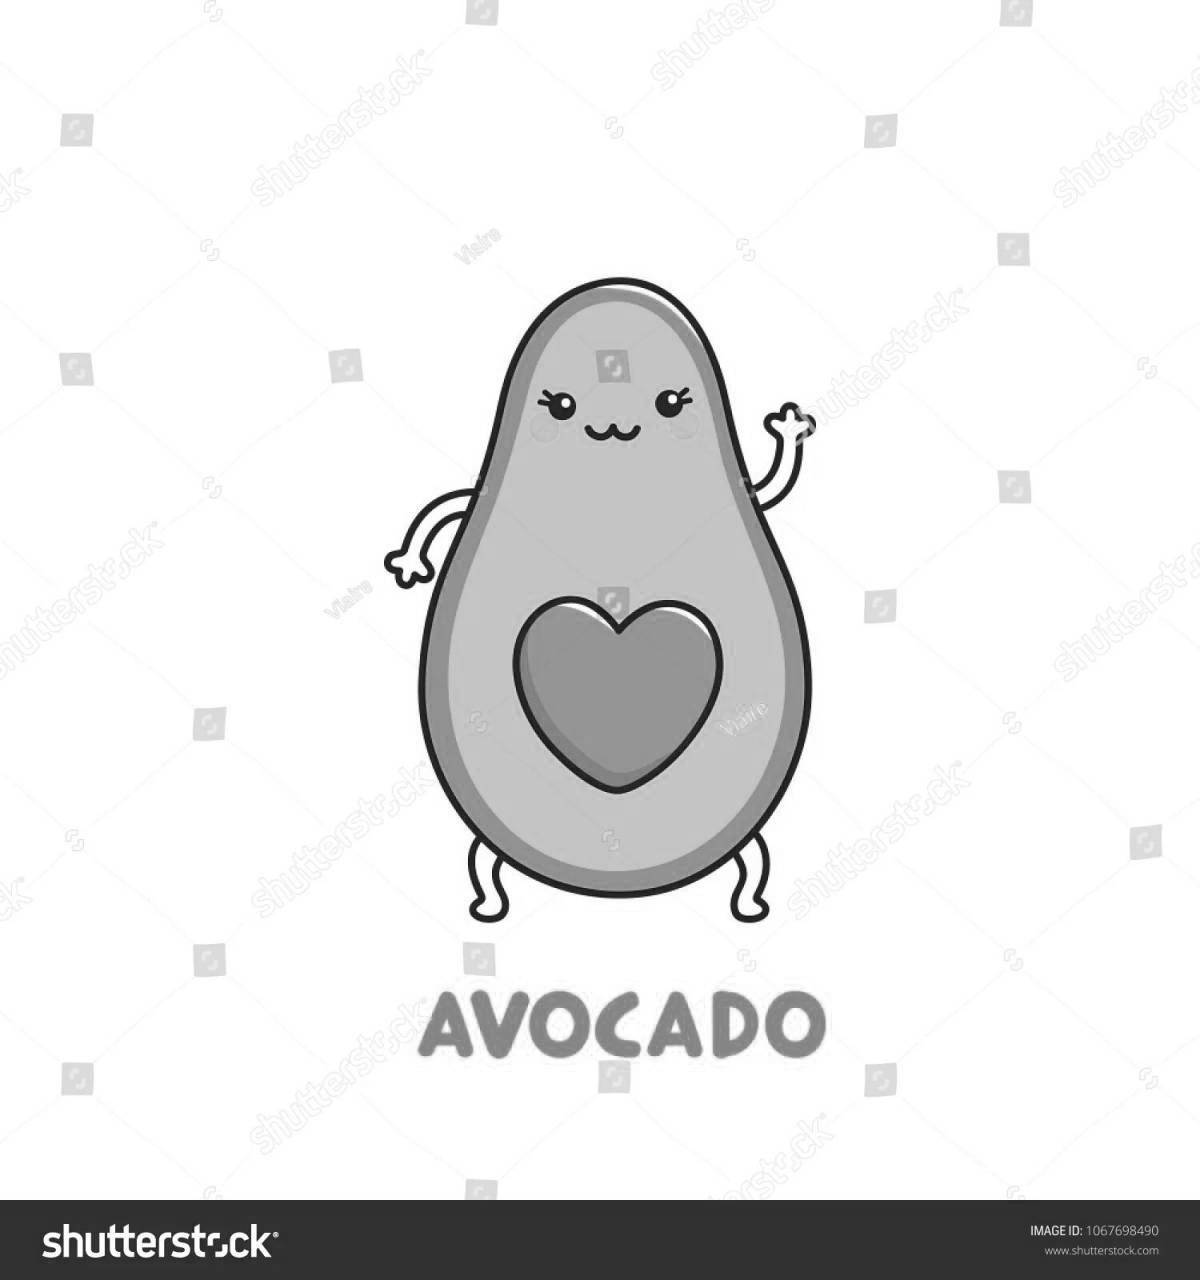 Amazing avocado coloring page